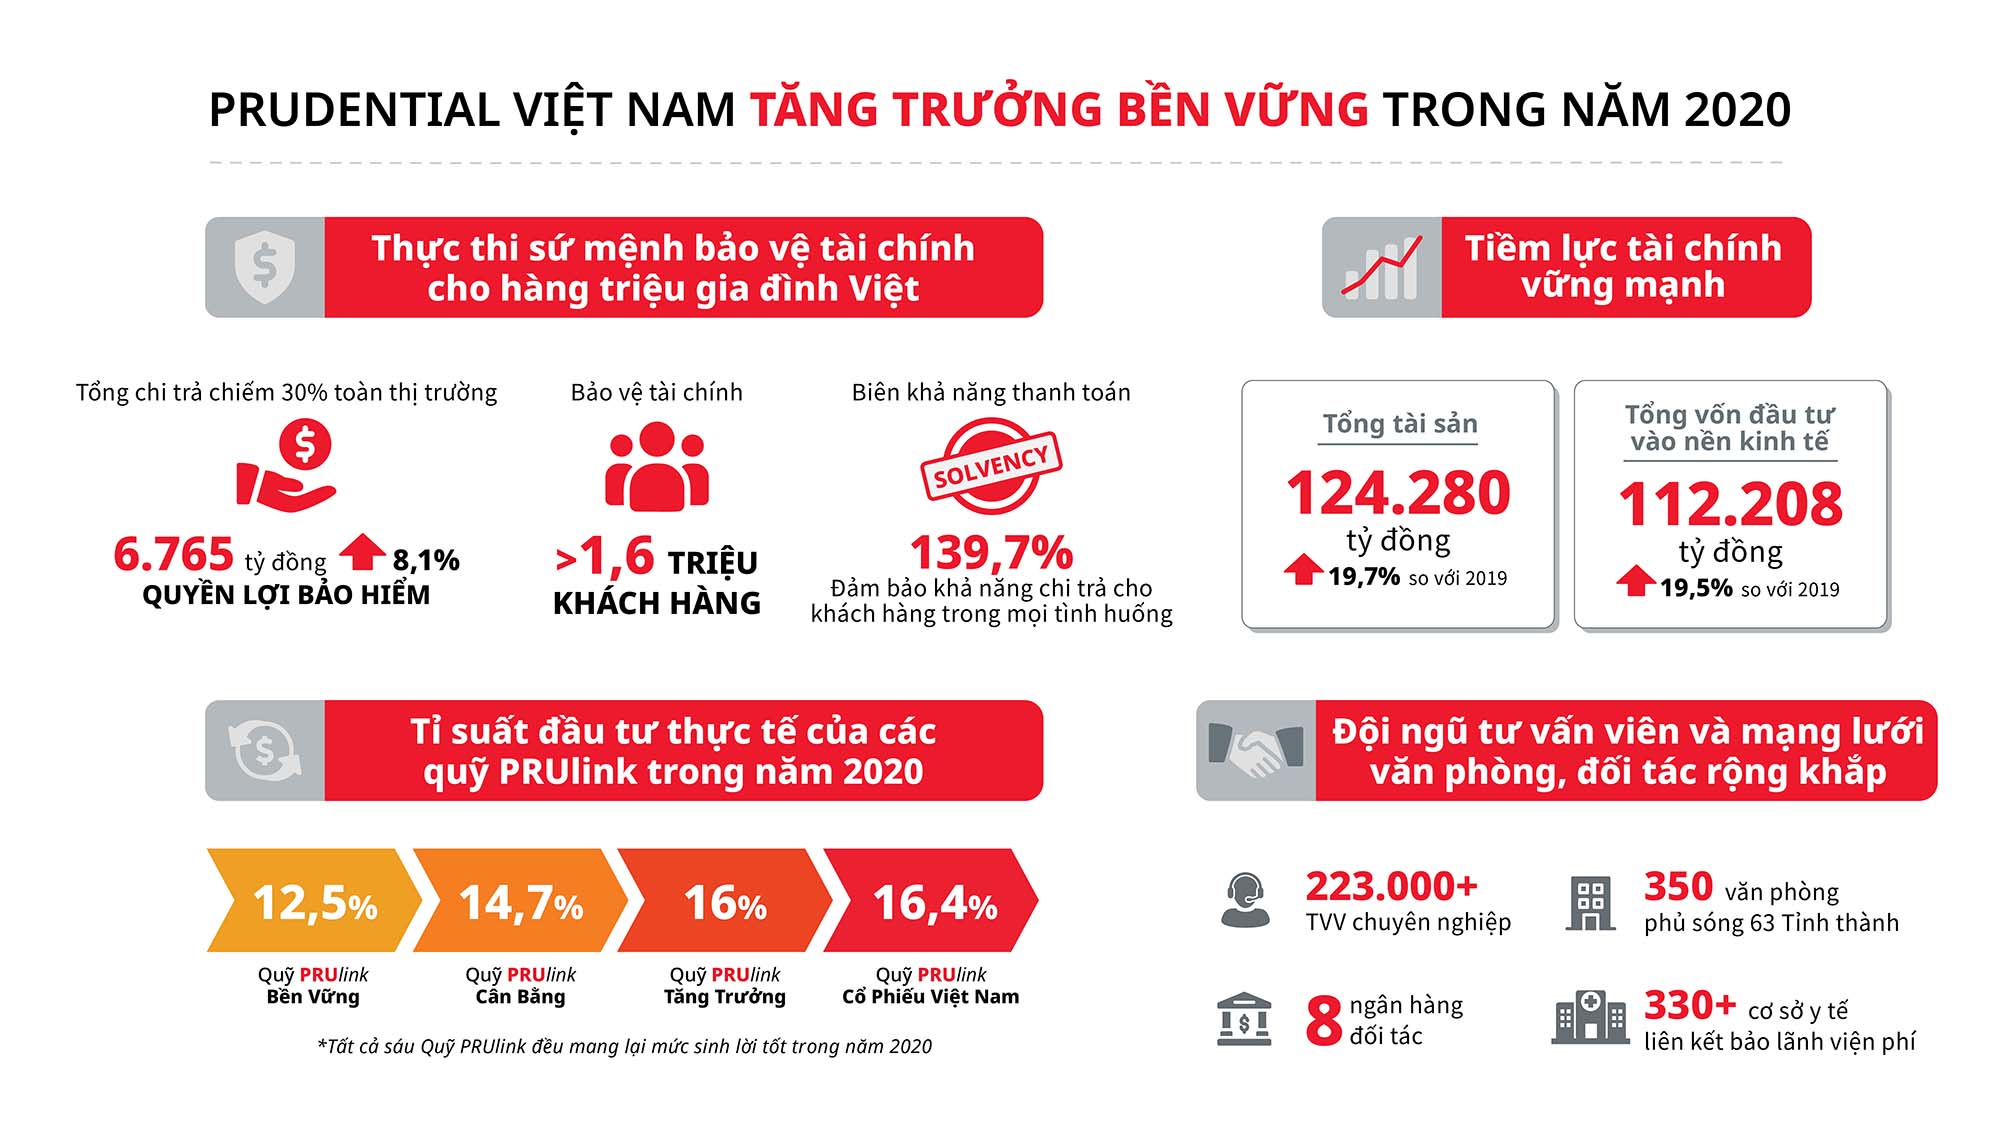 Prudential Việt Nam tăng trưởng bền vững và chi trả hơn 6,700 tỷ đồng quyền lợi bảo hiểm trong 2020, chiếm gần 30% toàn ngành